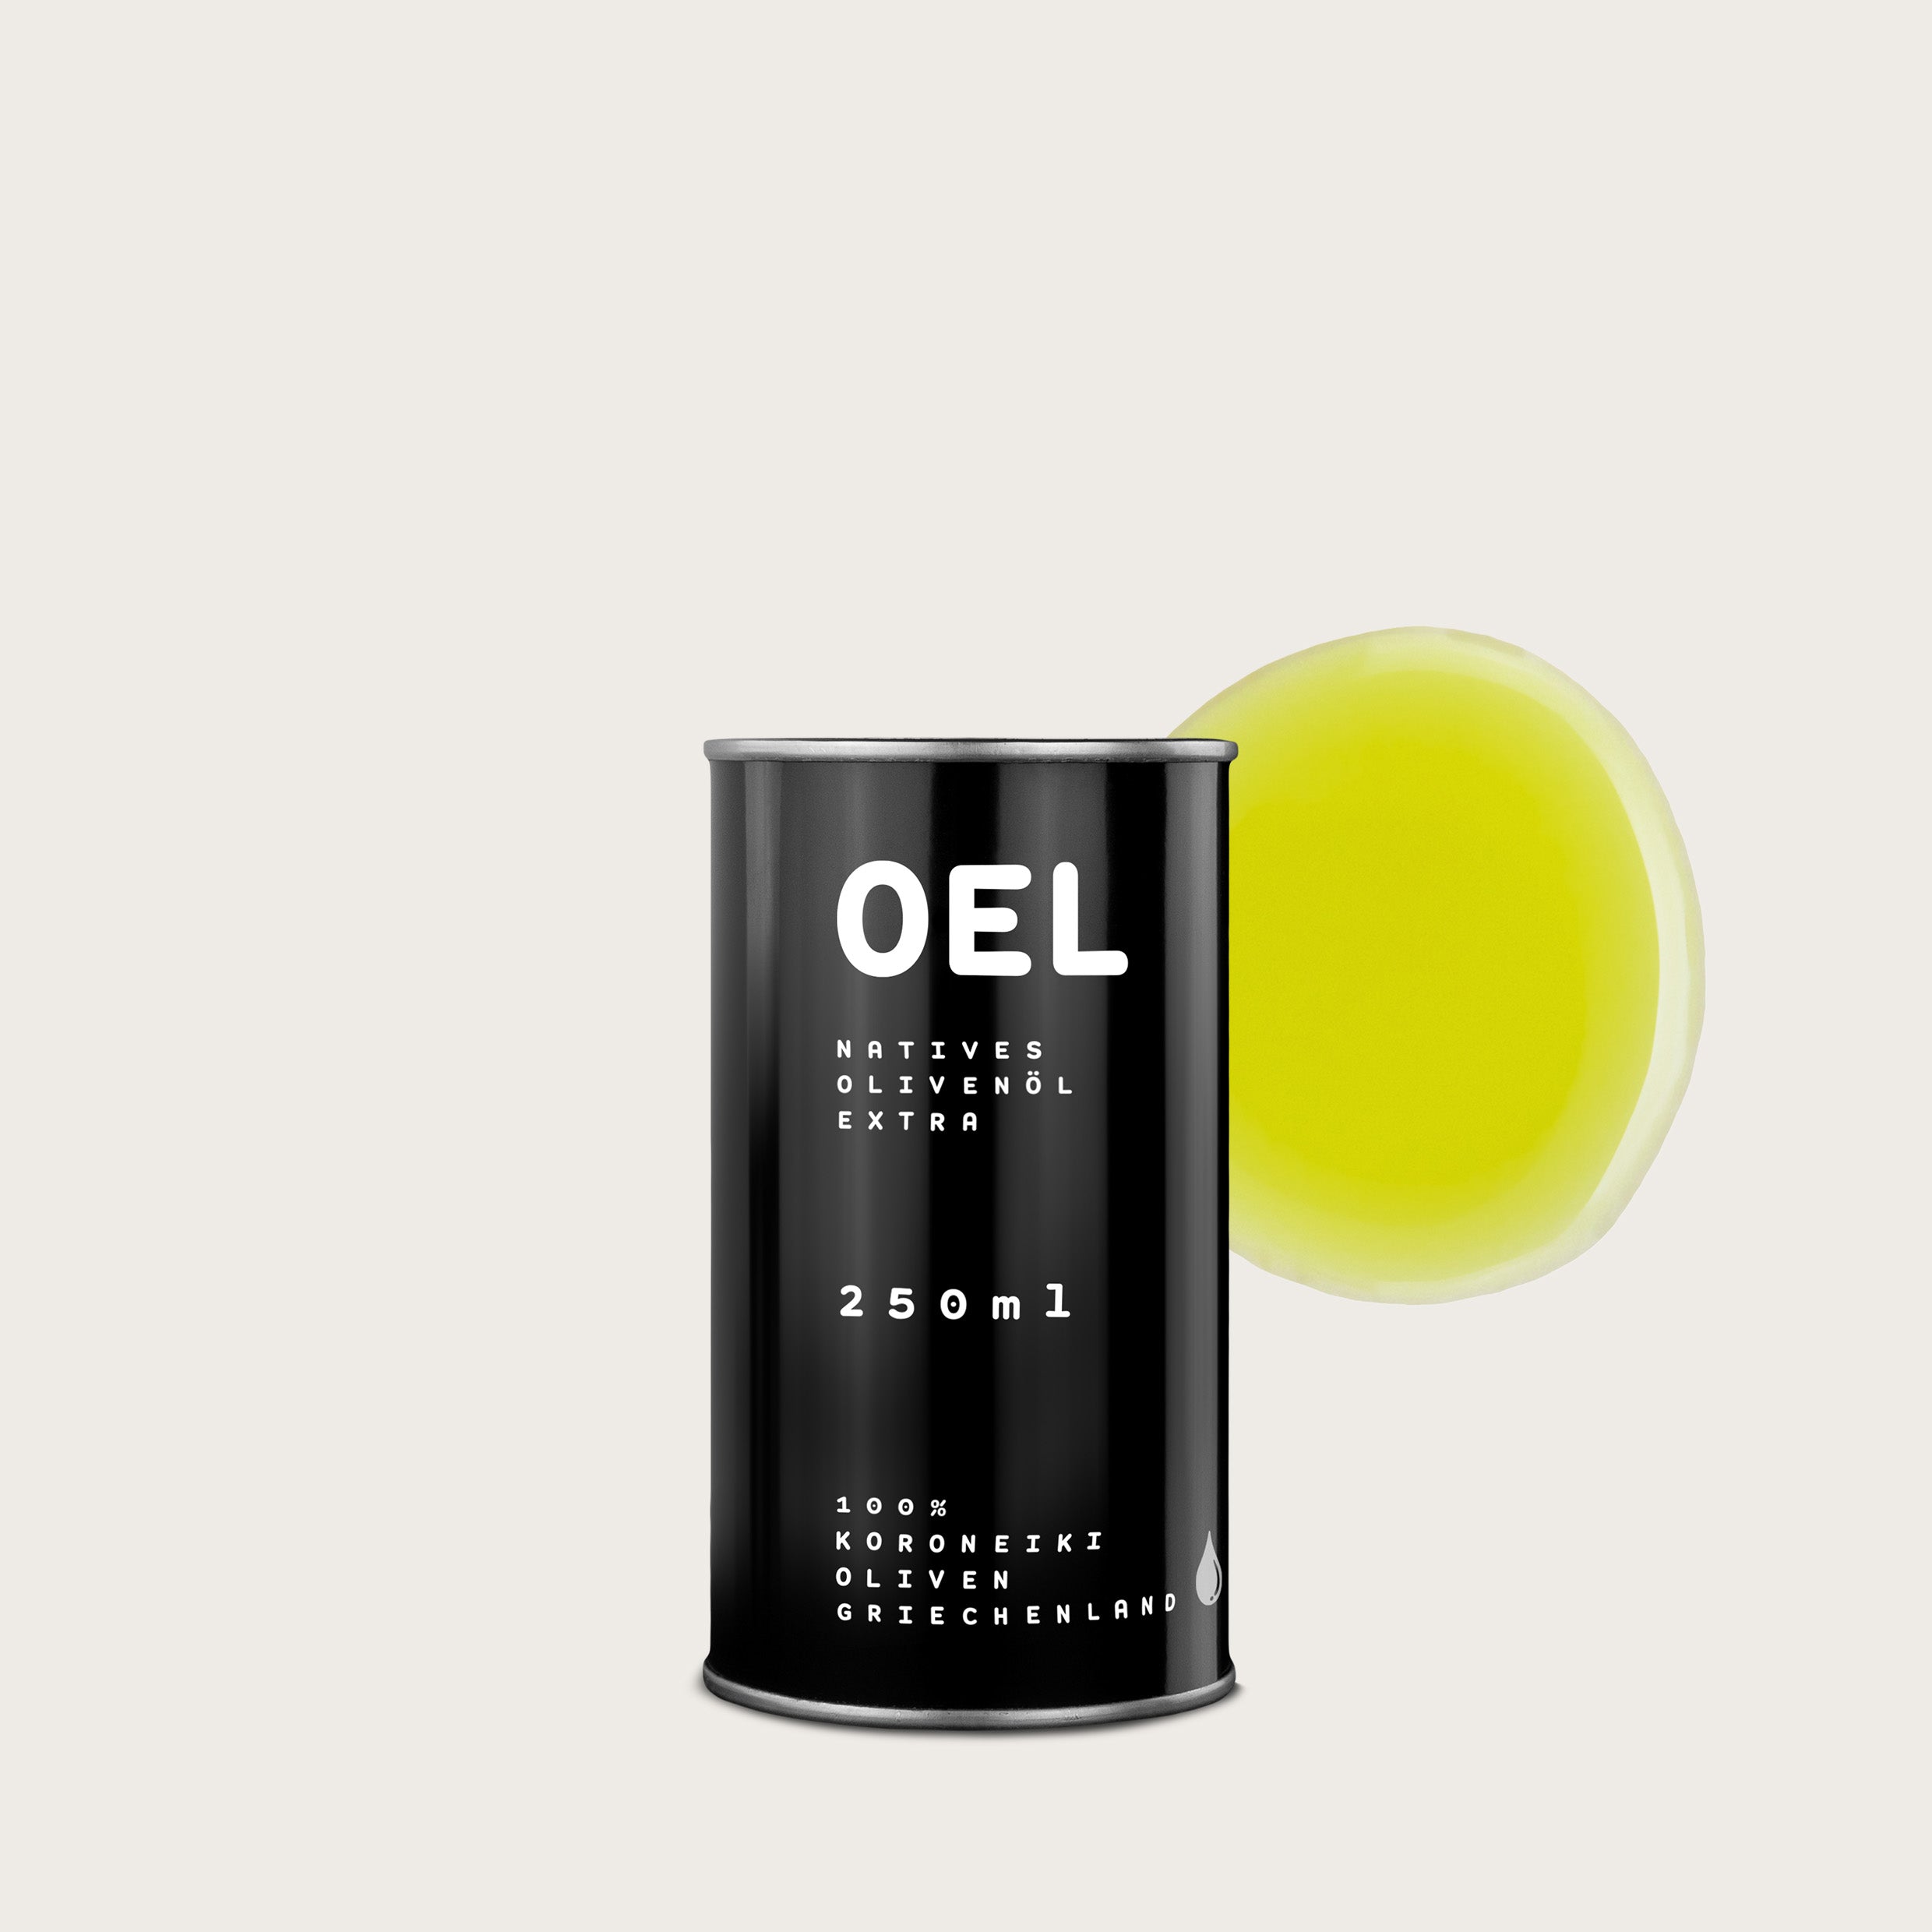 OEL 250 ml - Bio Natives Olivenöl Extra aus Griechenland